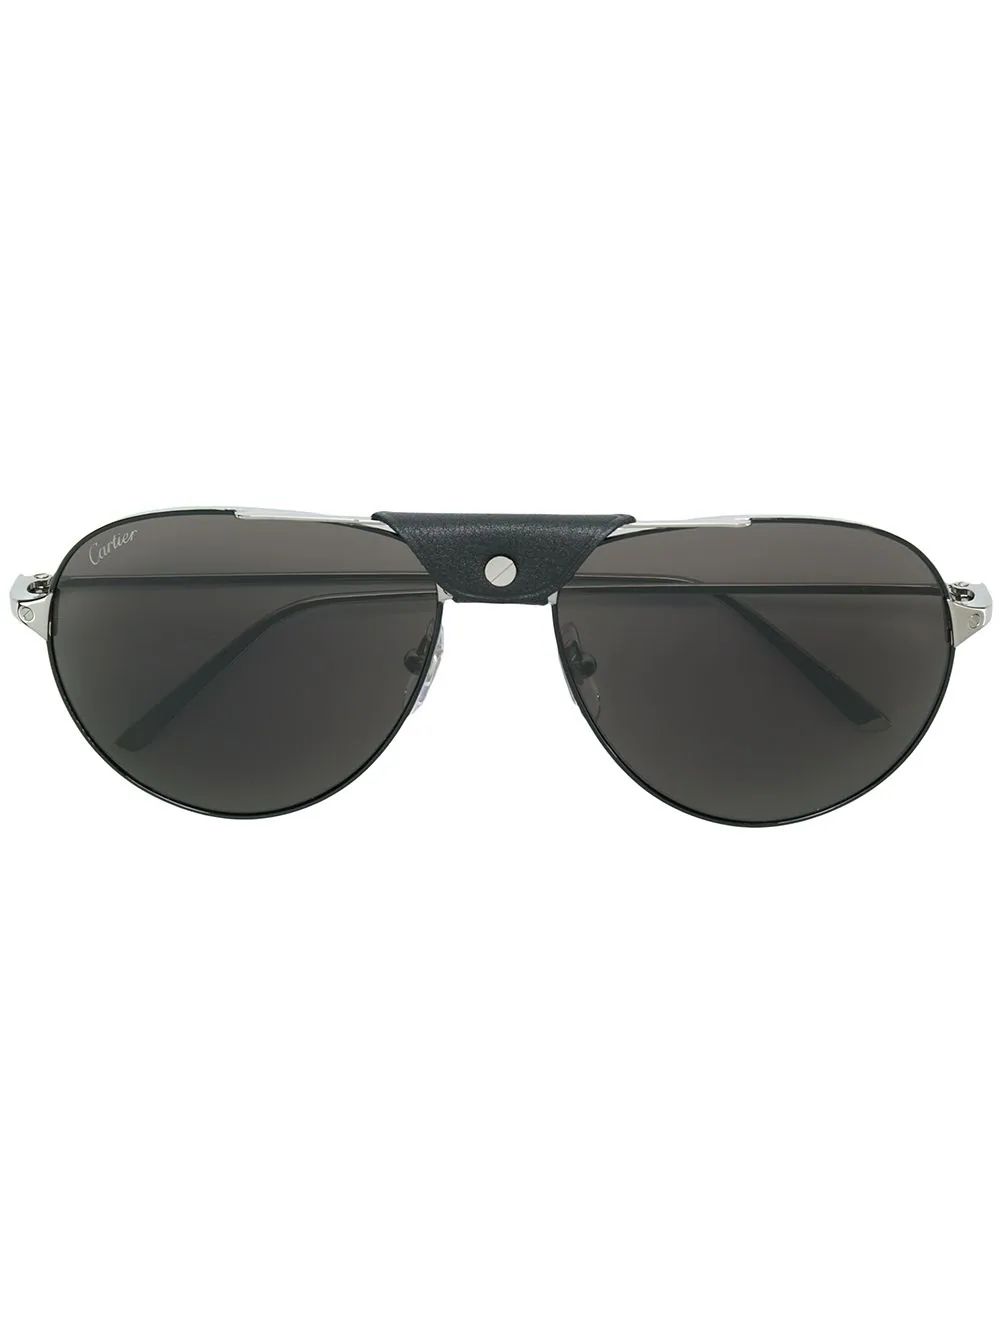 Cartier Santos aviator sunglasses - Black | FarFetch Global